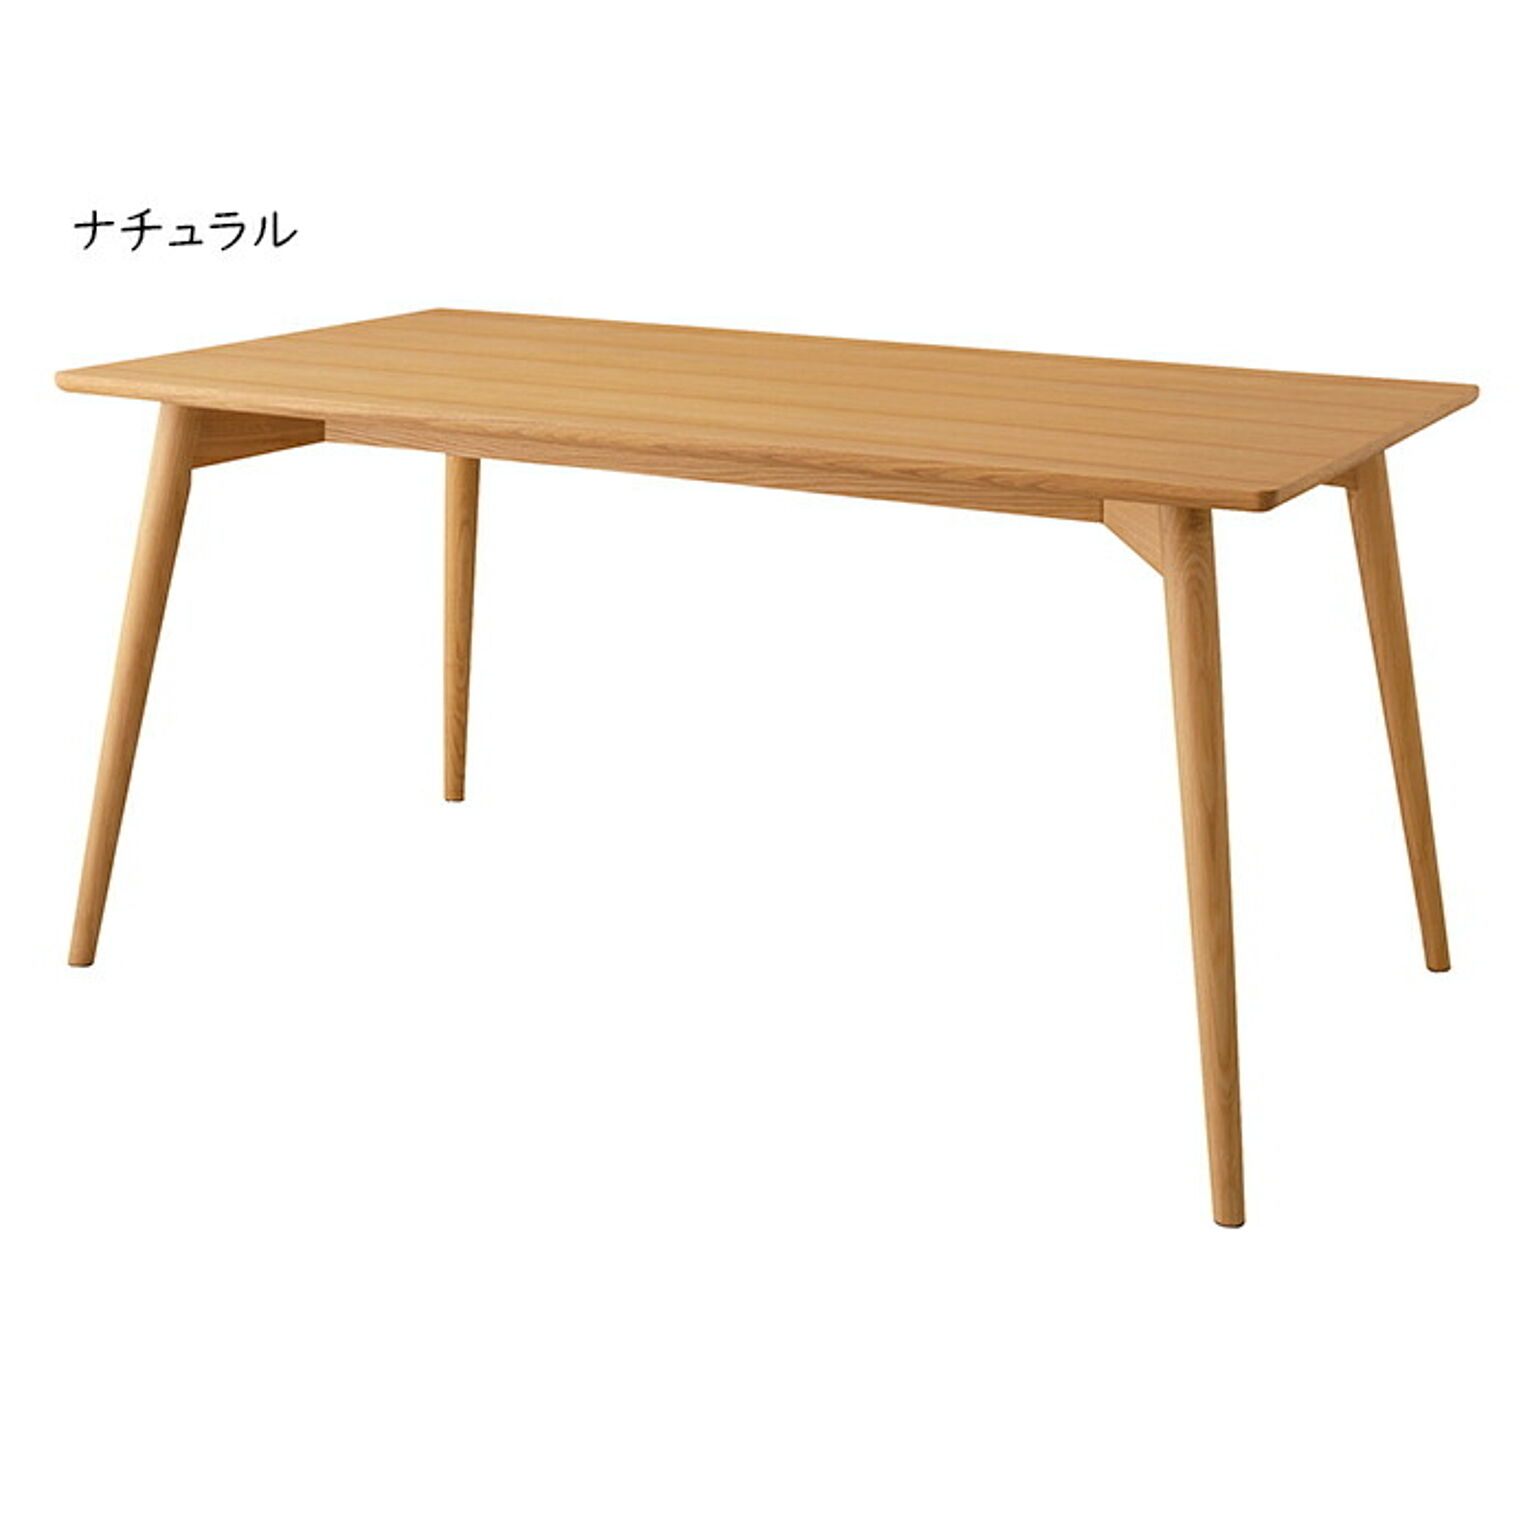 テーブル 組立式 カラメリ ダイニングテーブル KRM-150 幅150x奥行80x高さ72cm 東谷